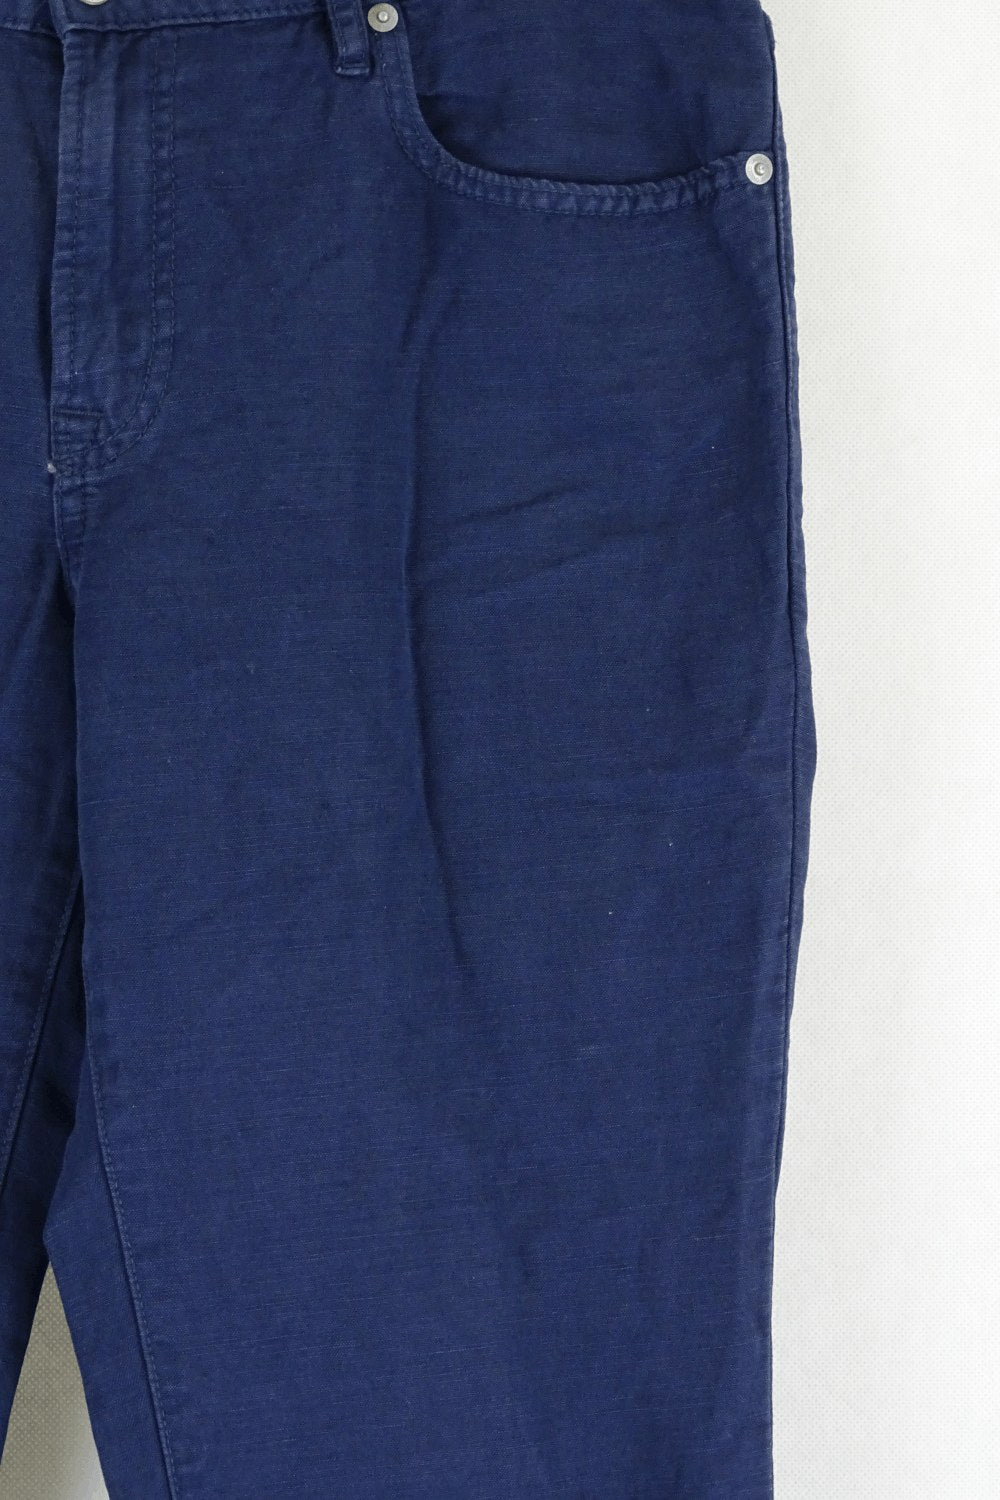 Uniqlo Blue Jeans 30 (AU12)